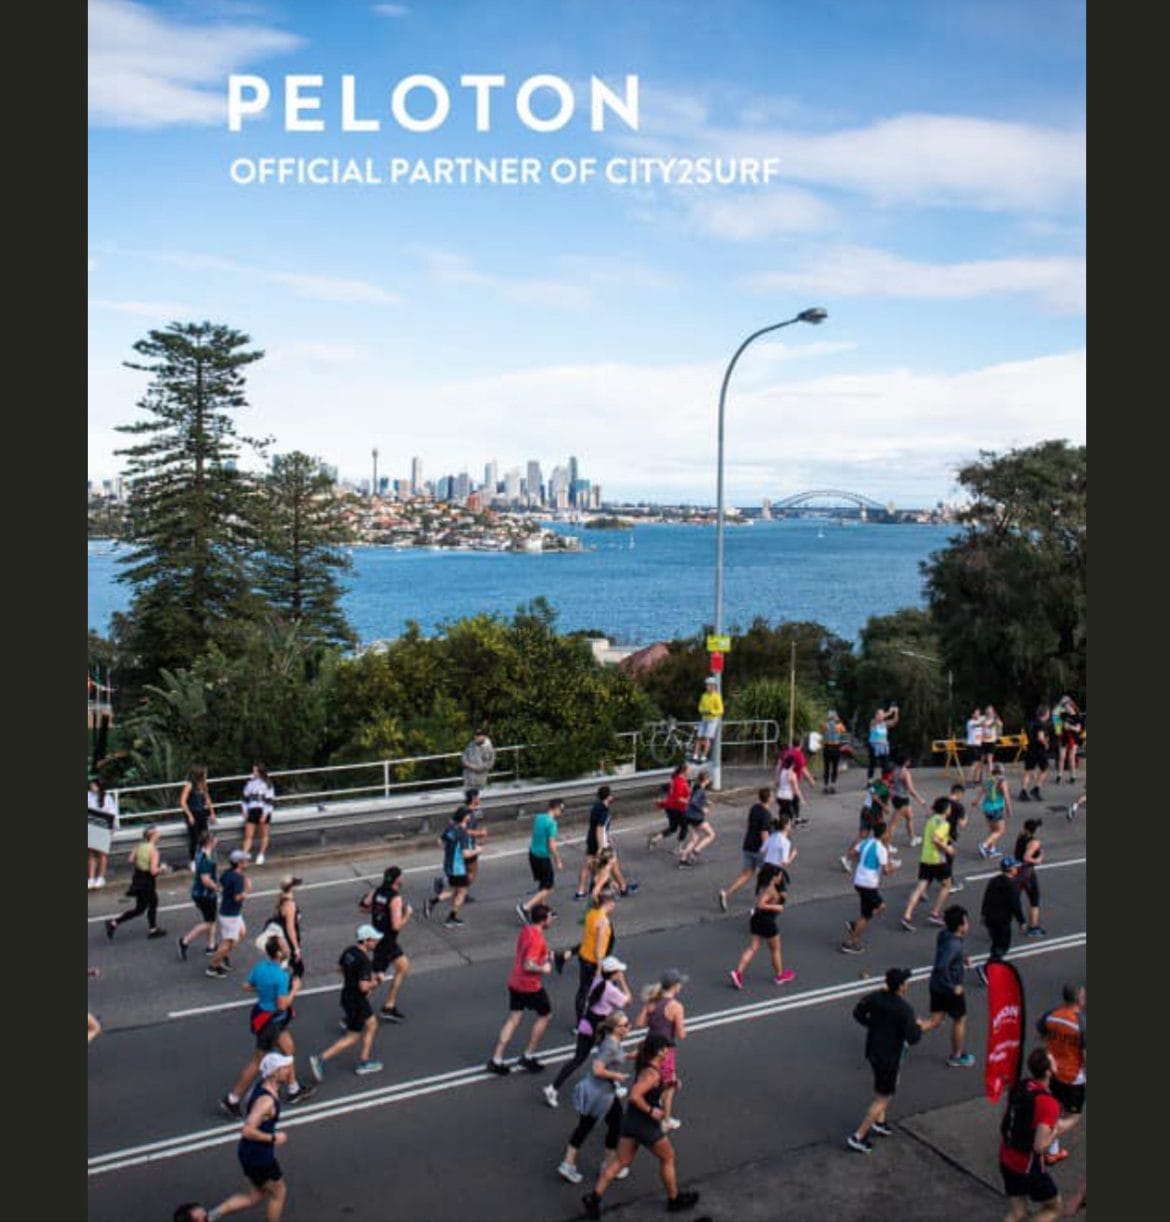 Peloton announcement about City2Surf partnership. Image credit Peloton social media.